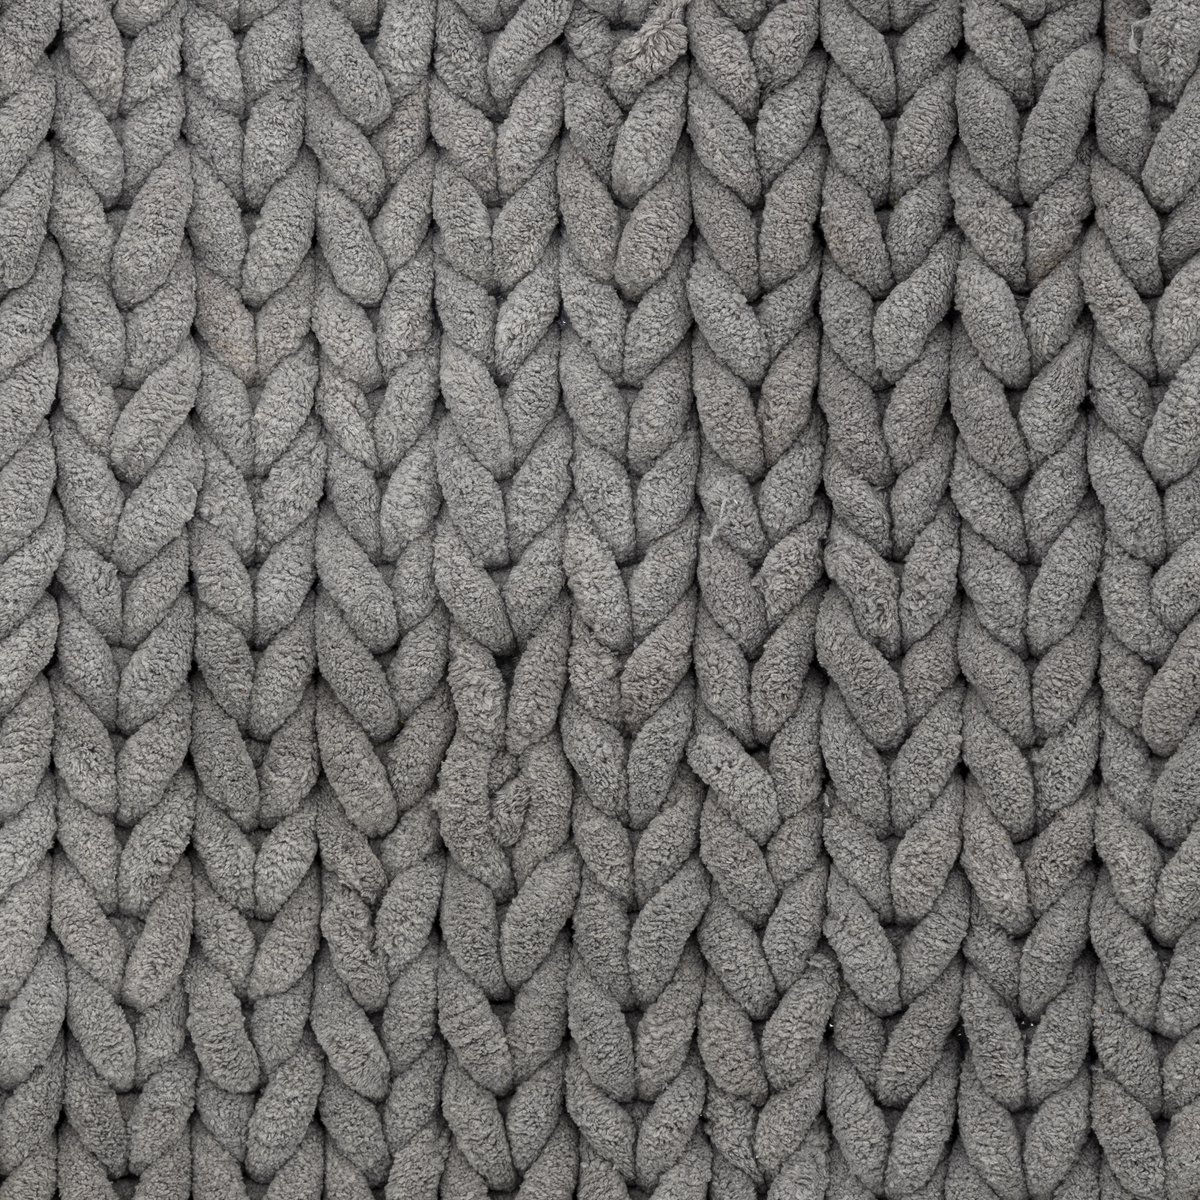 5five - tapis anti-dérapant 50x150cm gris